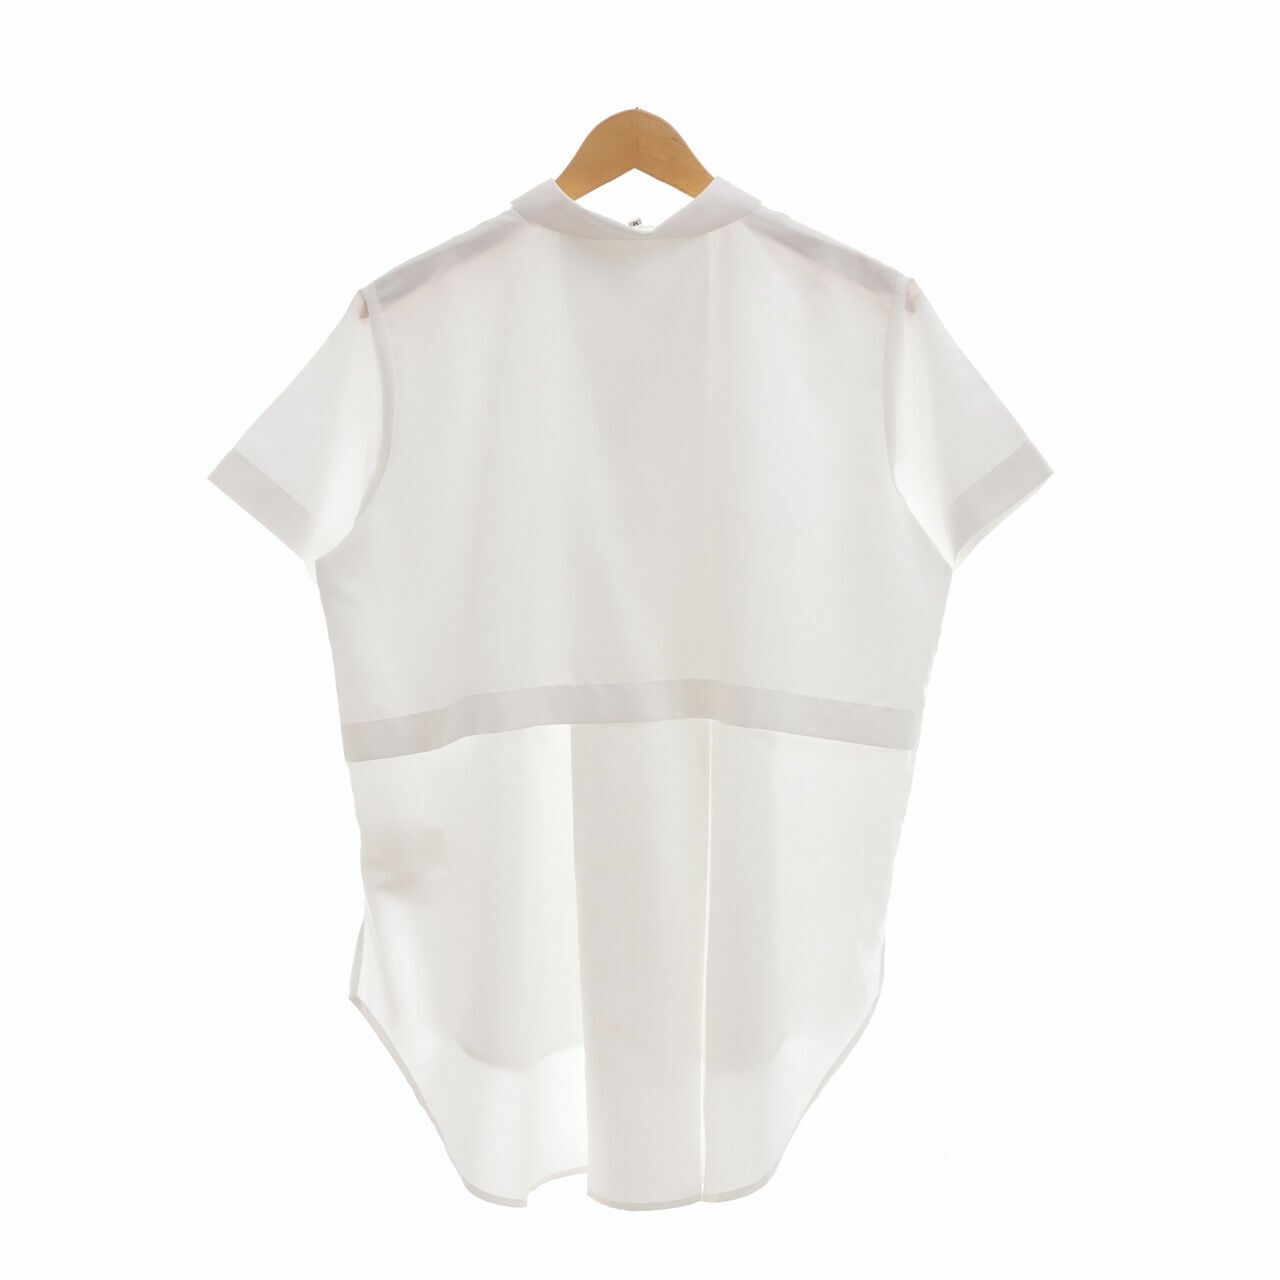 TWC x Masshiro&Co. White Shirt